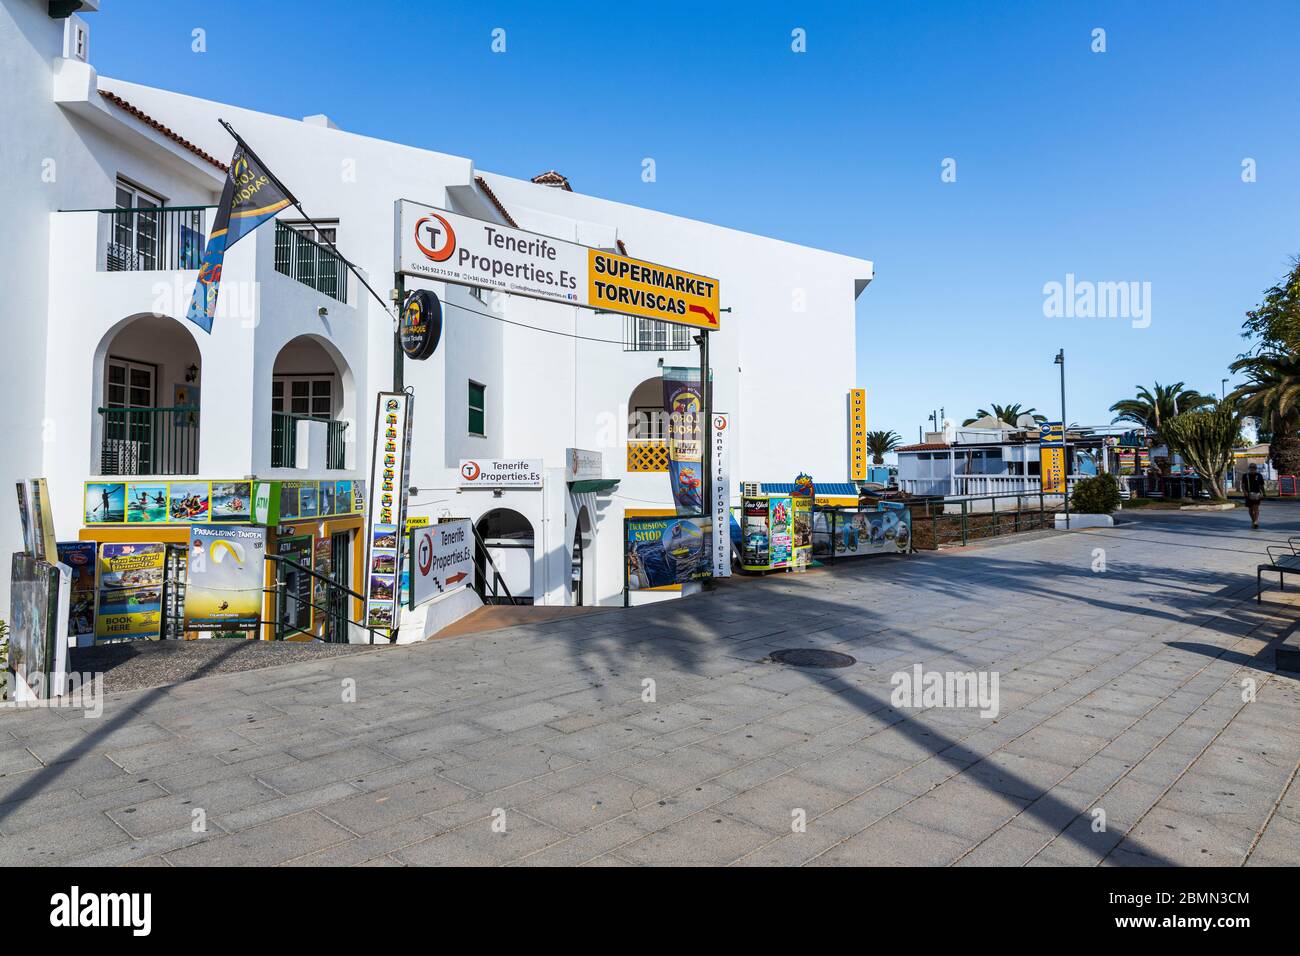 Fermeture des commerces et des commerces à Torviscas pendant le confinement de Covid 19 dans la station touristique de Costa Adeje, Tenerife, Iles Canaries, Espagne Banque D'Images